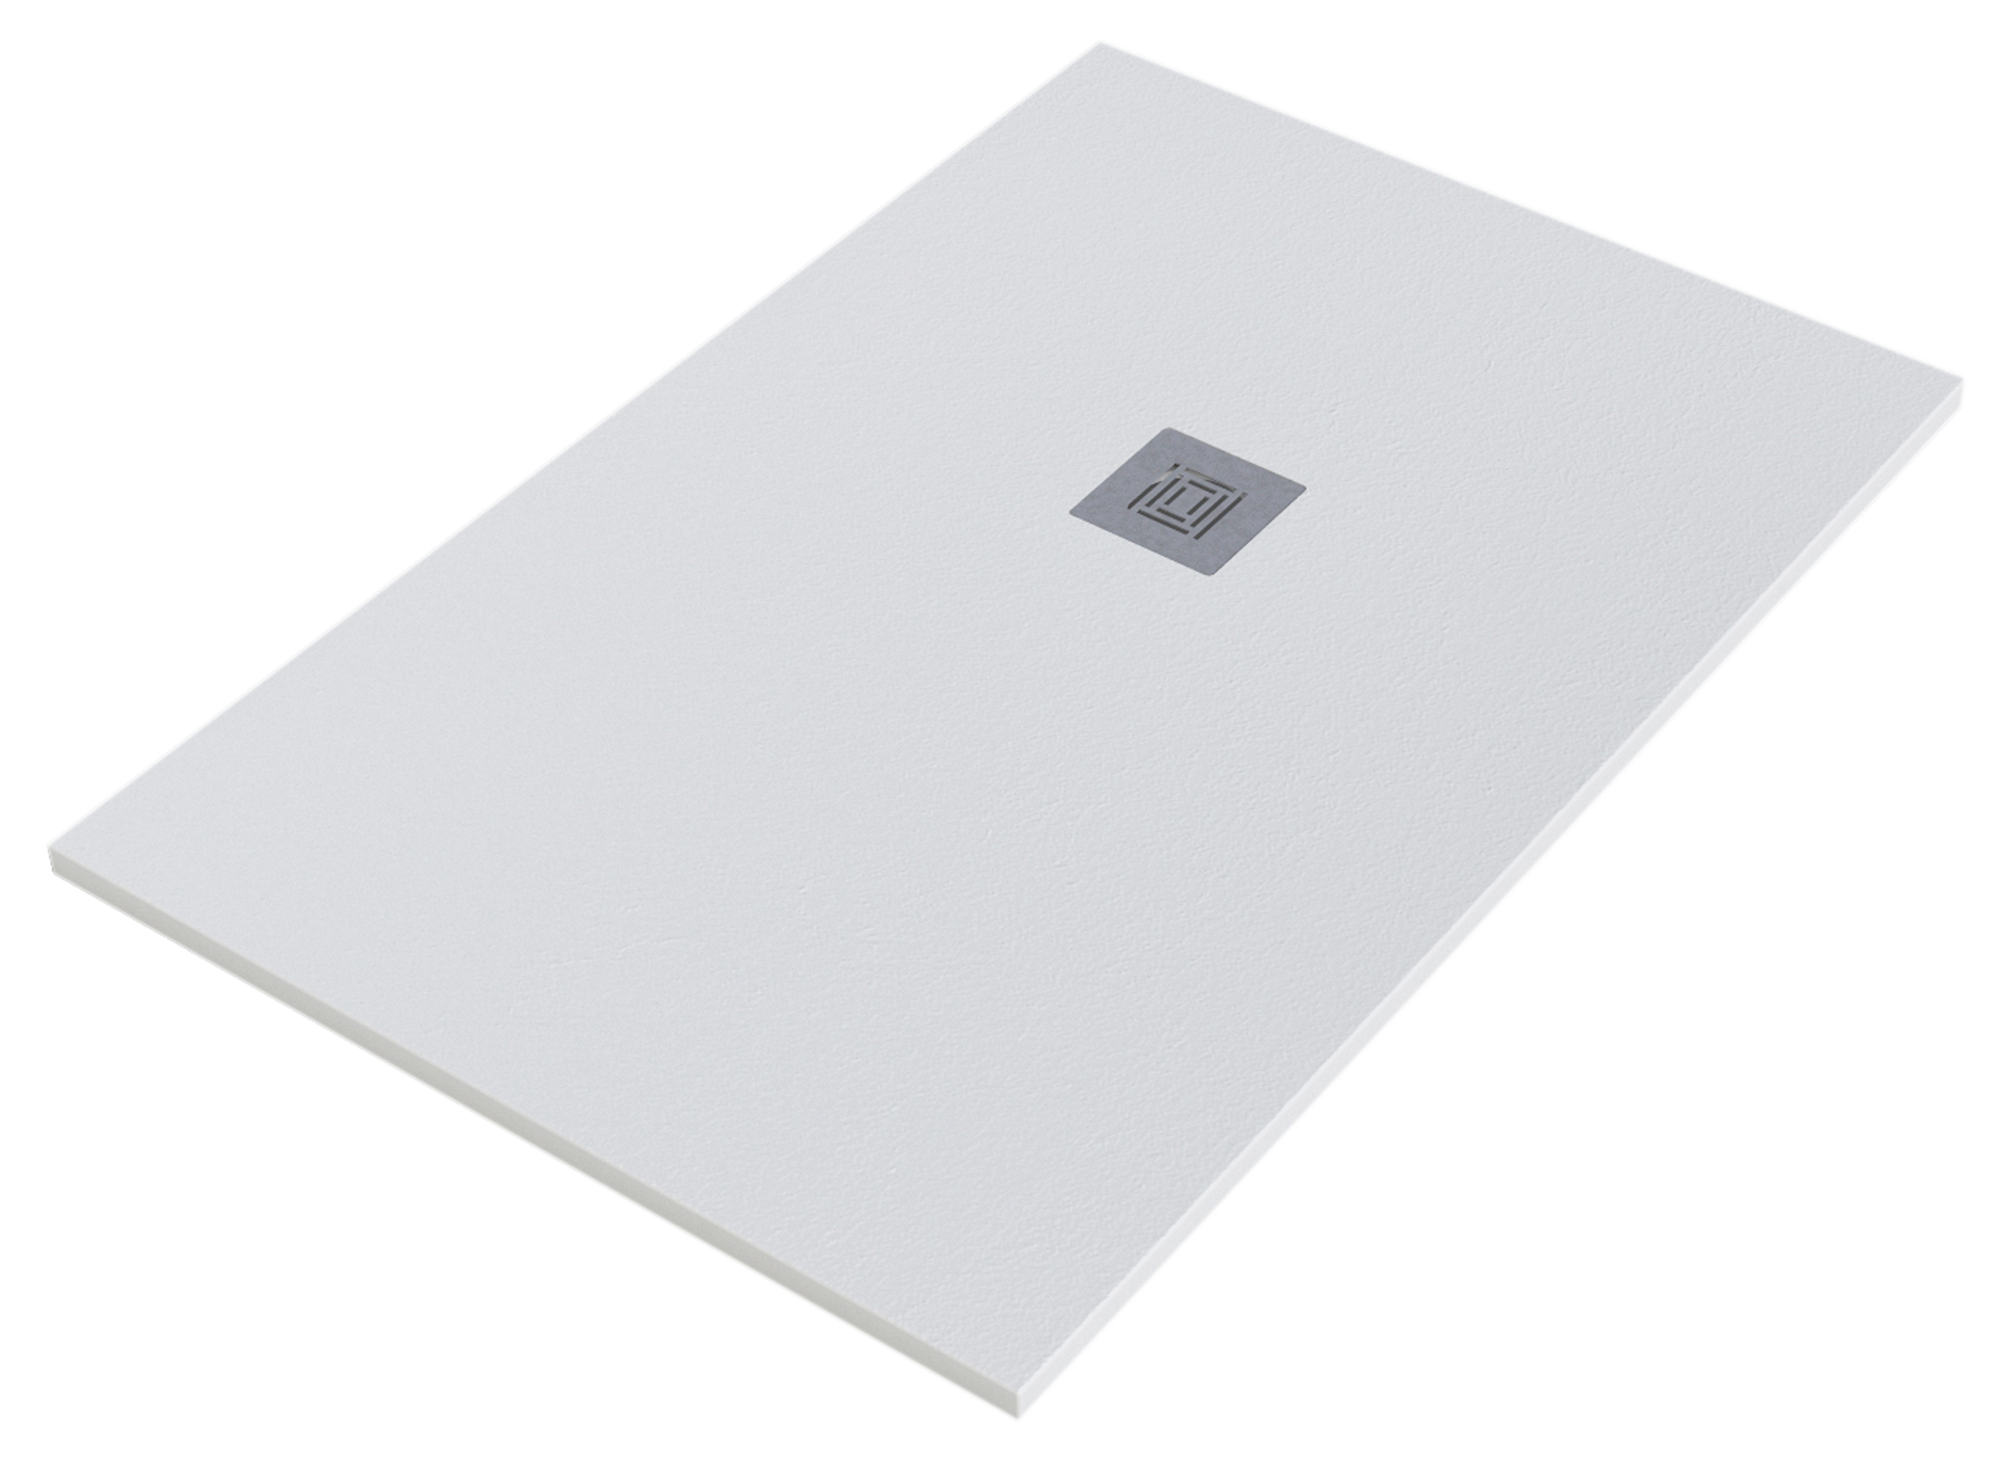 Plato de ducha stone 150x80 cm blanco